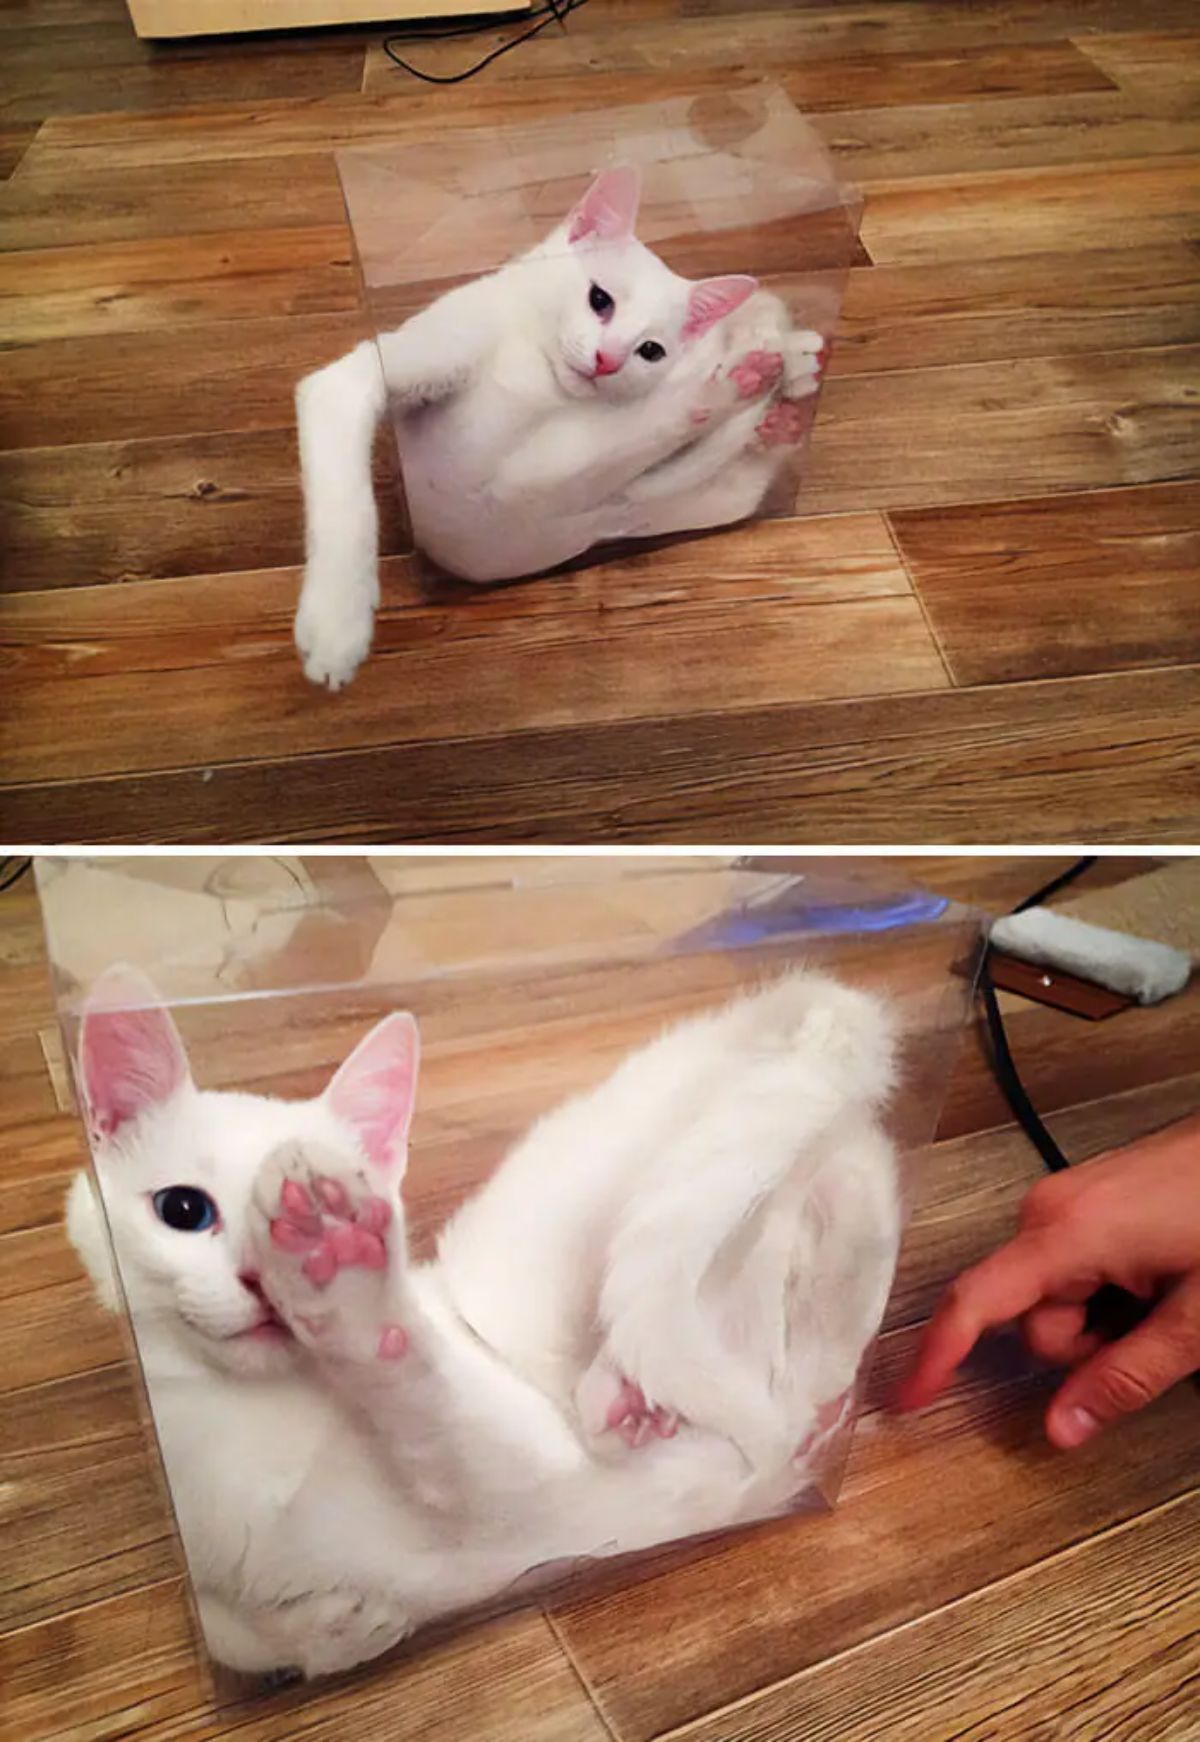 2 photos of a white cat inside a transparent plastic box